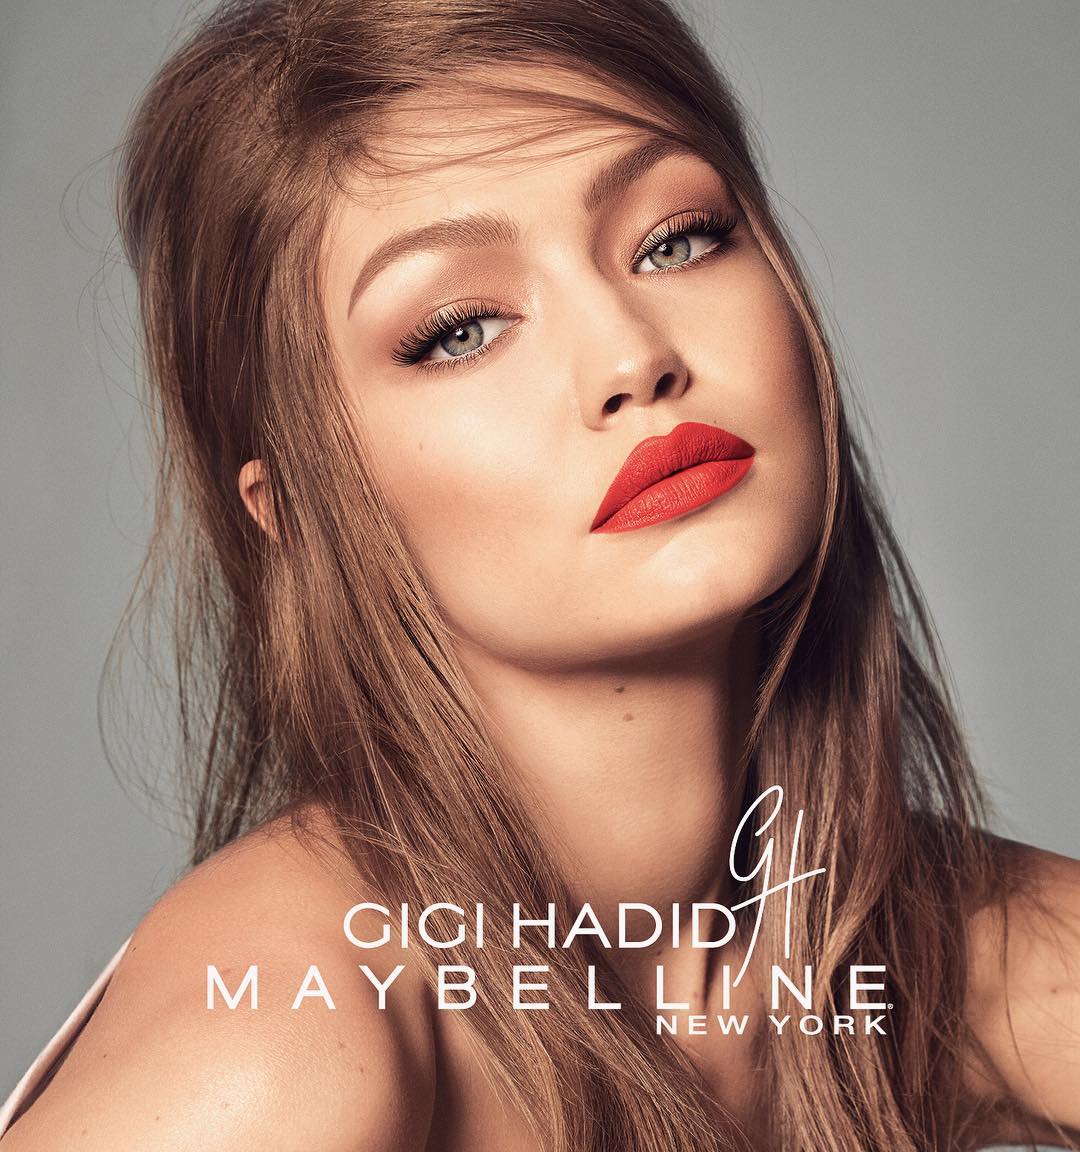 Gigi Hadid kết hợp với Maybelline ra mắt BST mỹ phẩm hàng khủng đầy đủ từ son lì đến phấn mắt, mascara... - Ảnh 10.